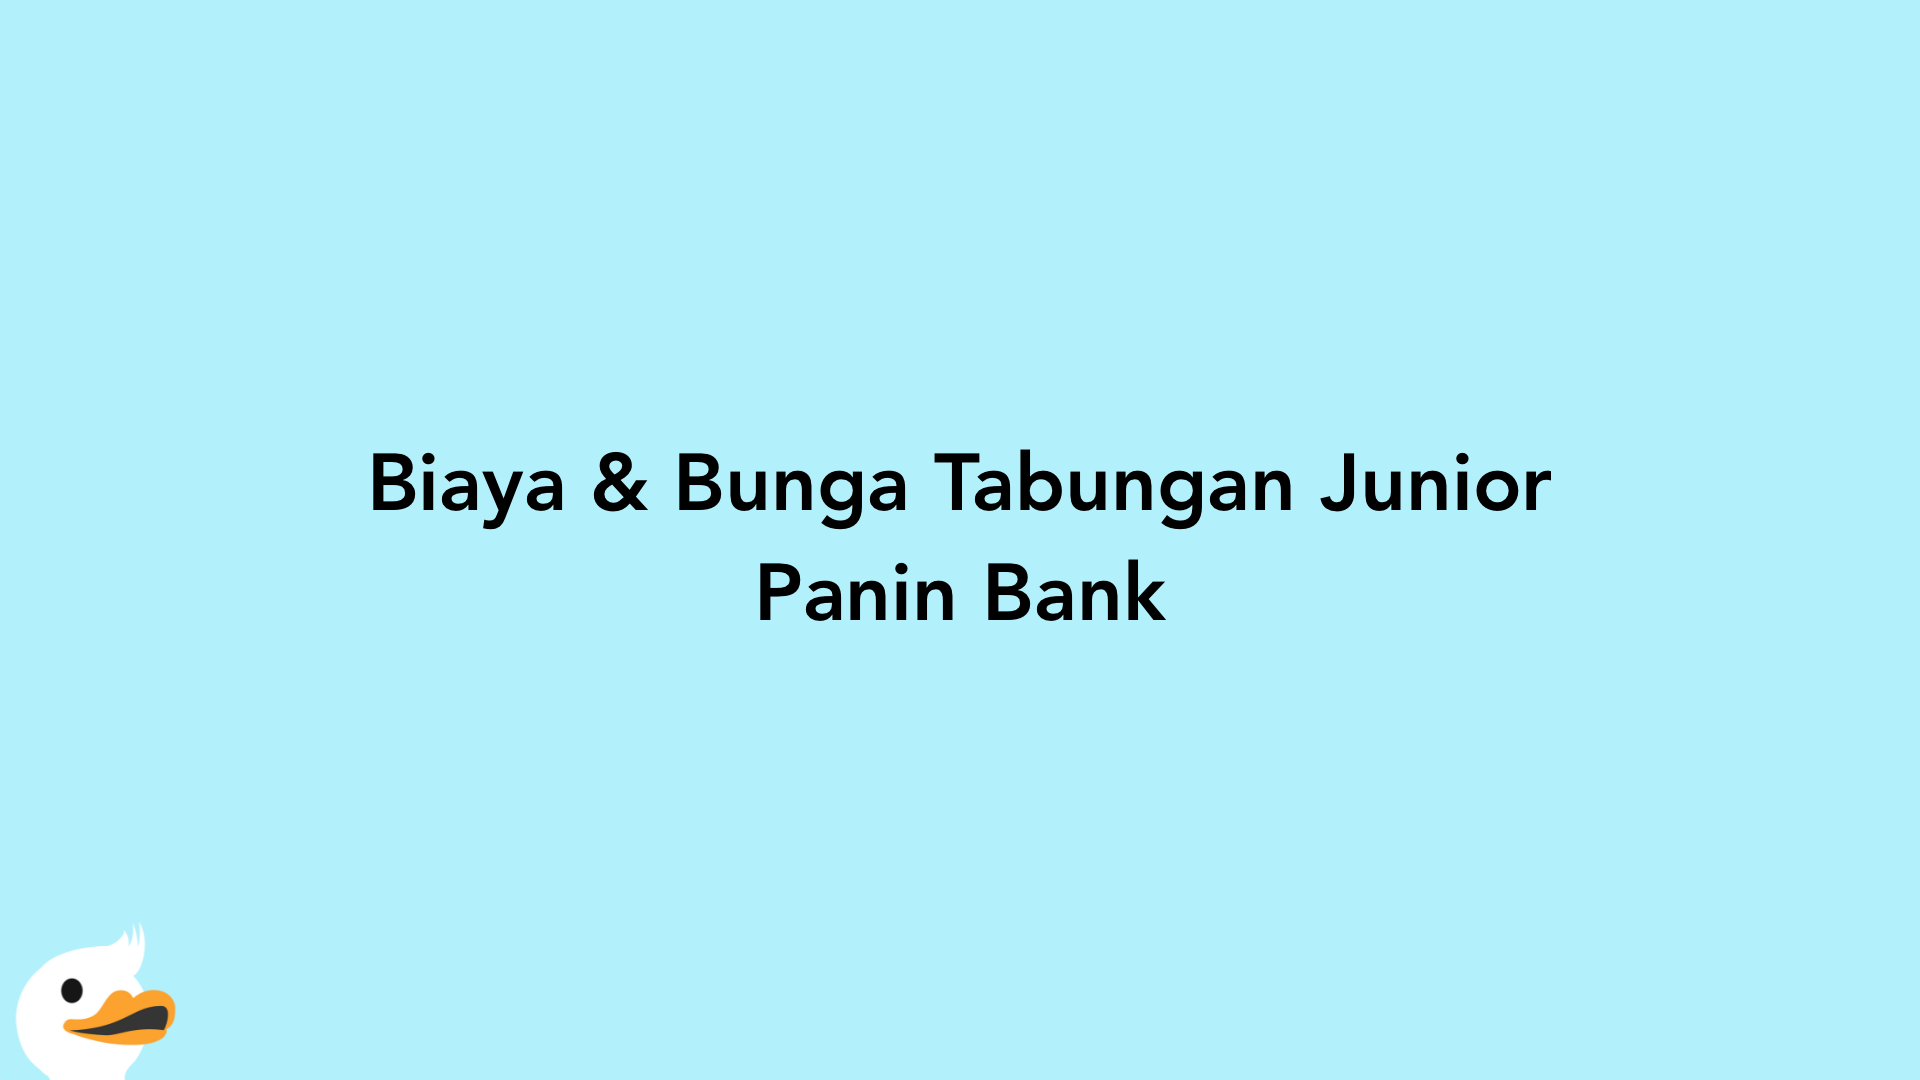 Biaya & Bunga Tabungan Junior Panin Bank